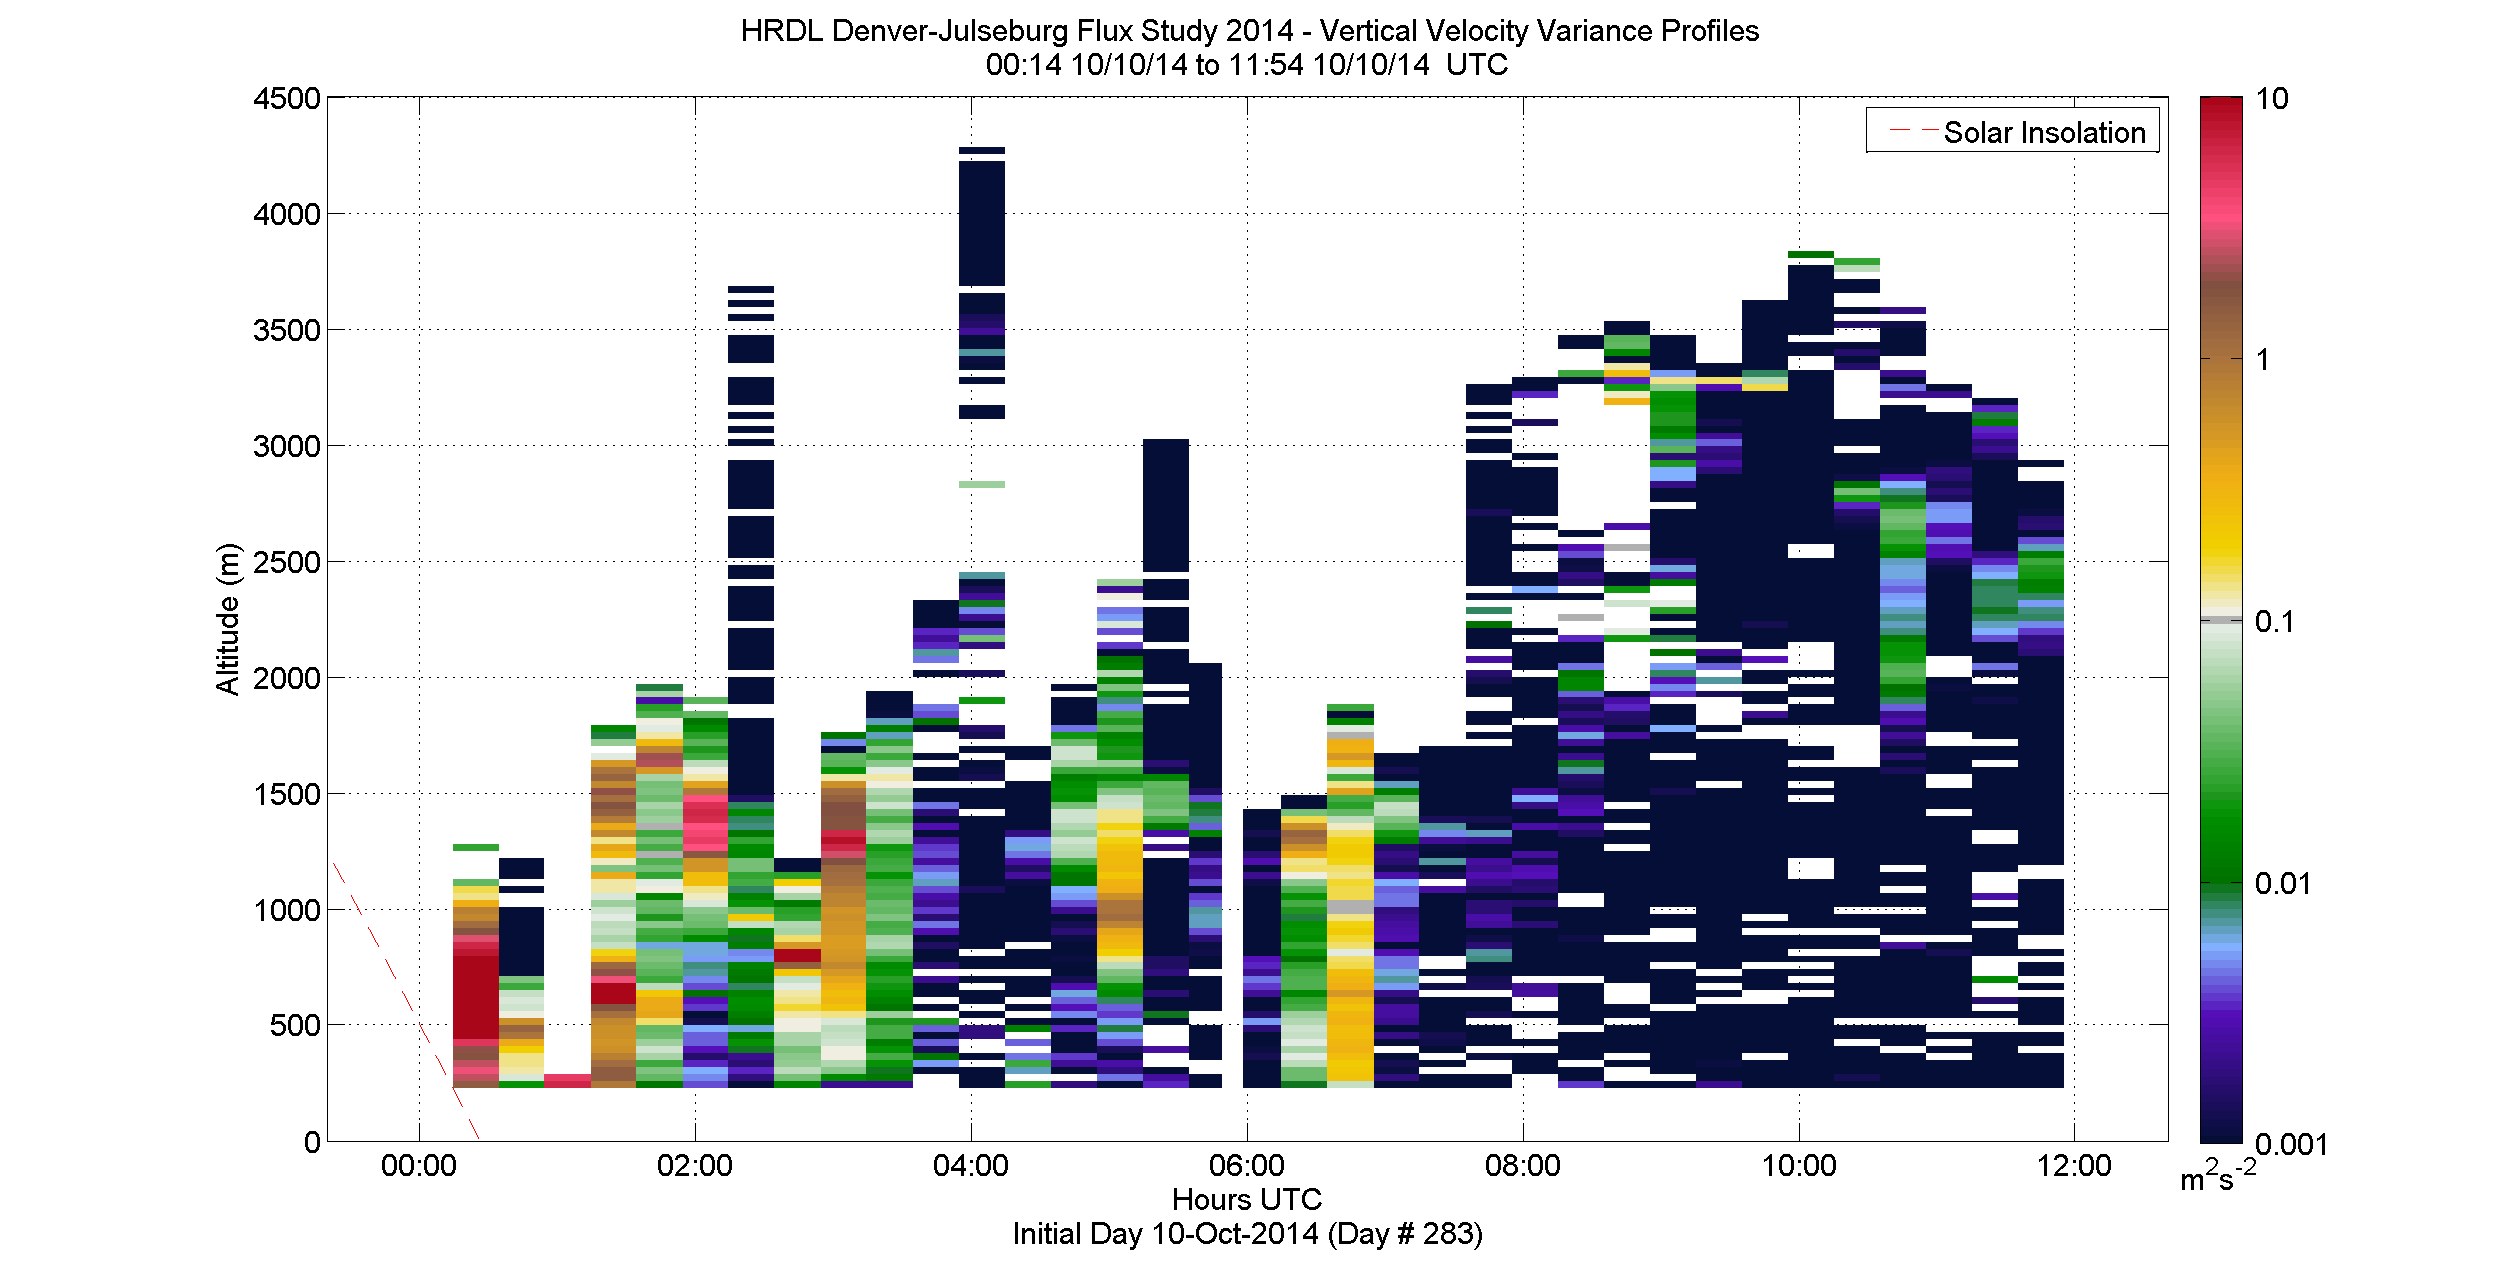 HRDL vertical variance profile - October 10 am